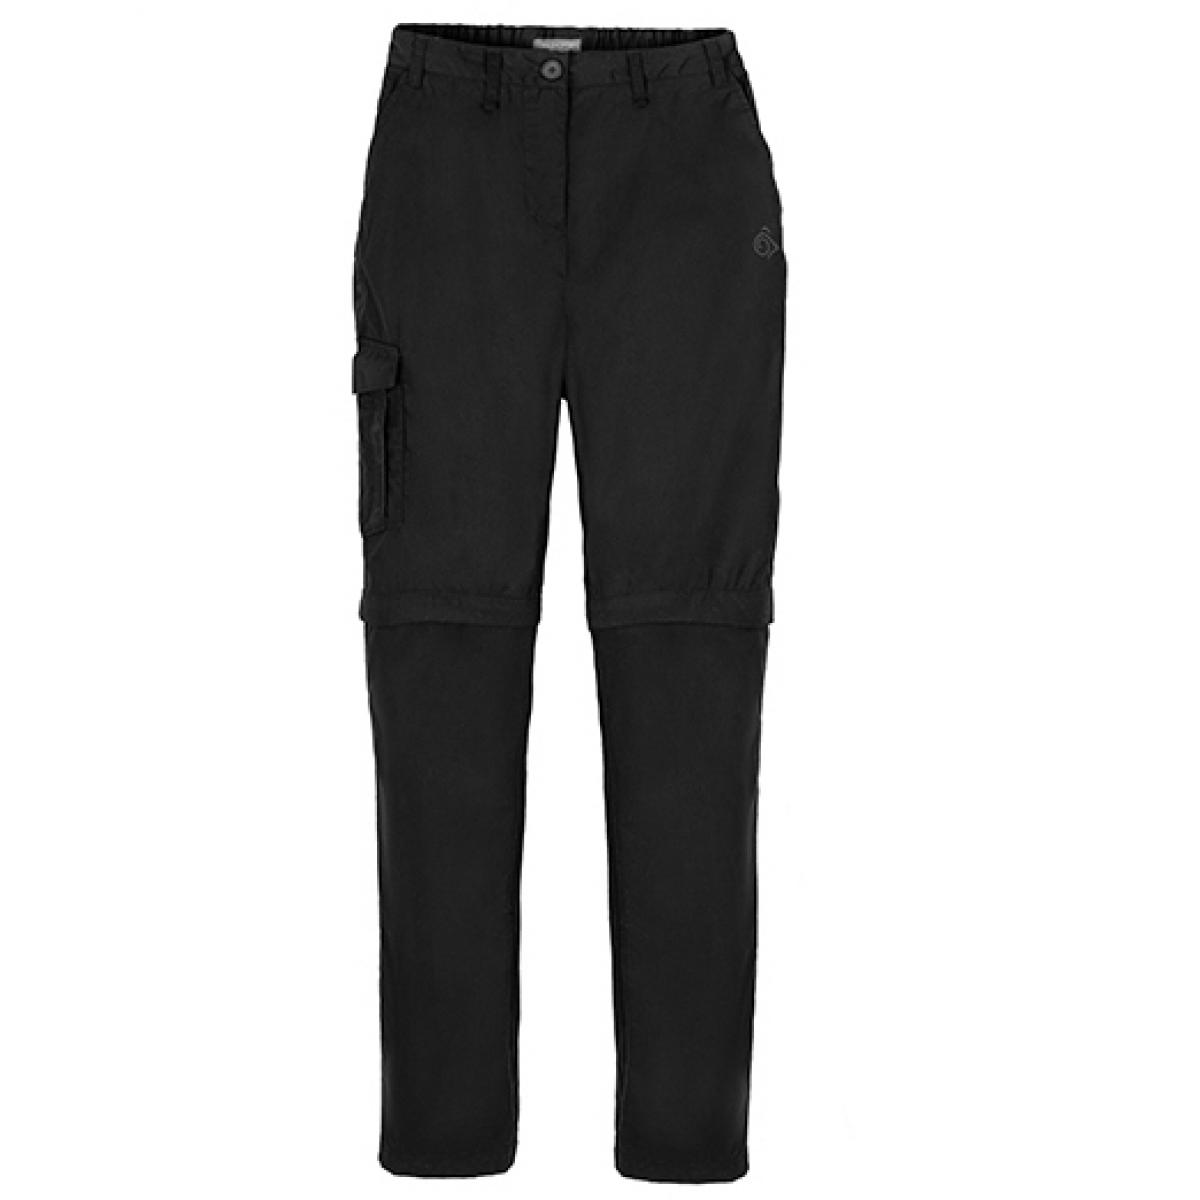 Hersteller: Craghoppers Expert Herstellernummer: CEJ006 Artikelbezeichnung: Expert Womens Kiwi Convertible Trousers - Arbeitshose Farbe: Black